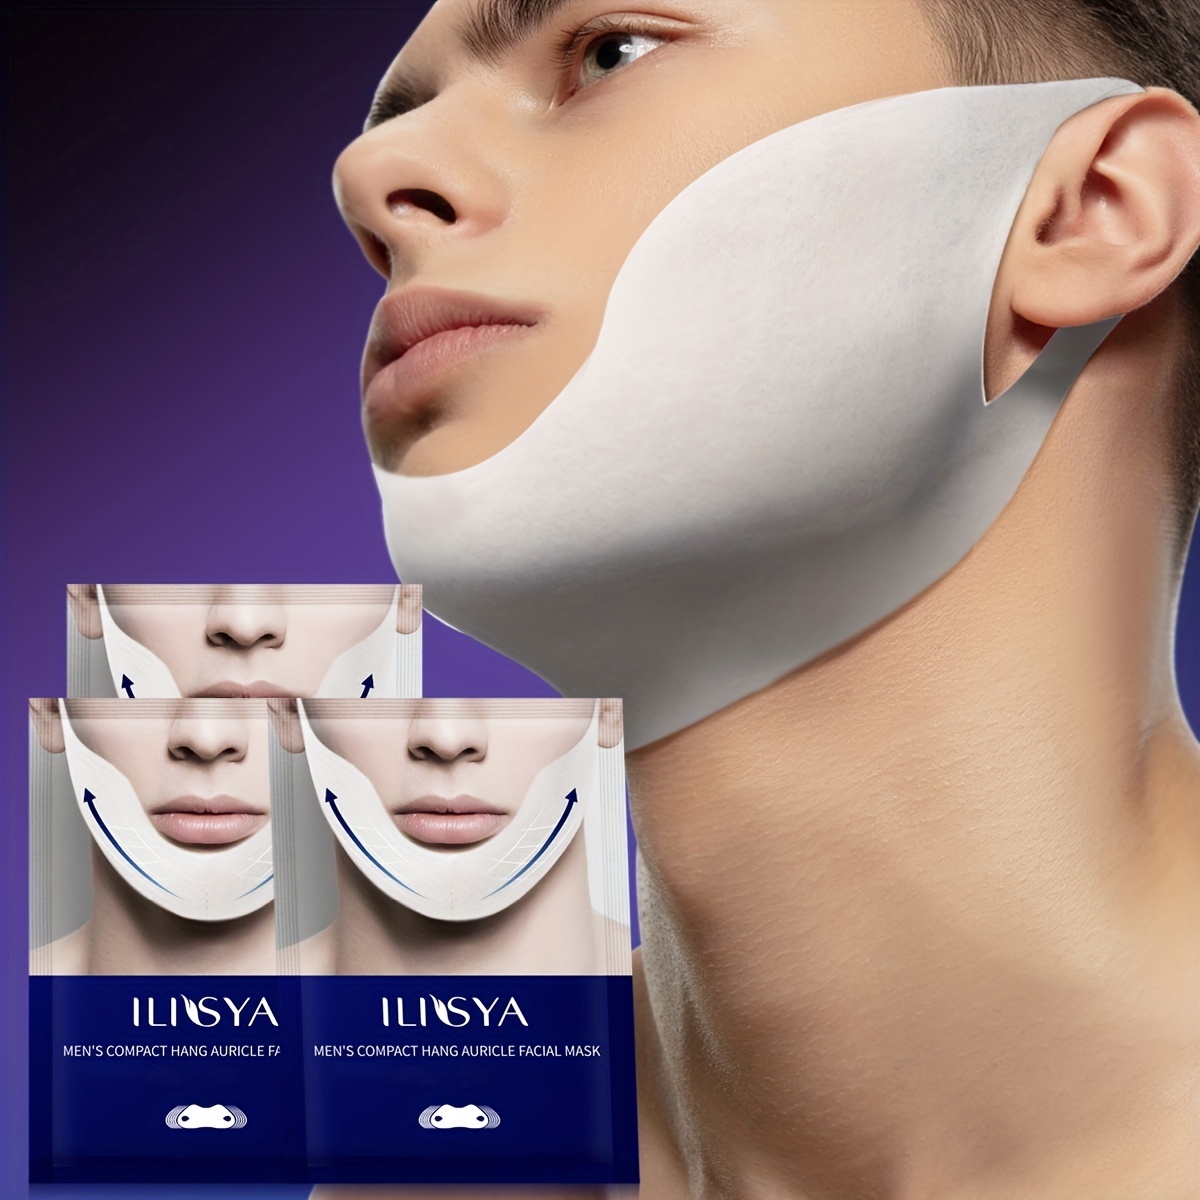 yinguo face-lift mask facial lifting belt compression chin cheek